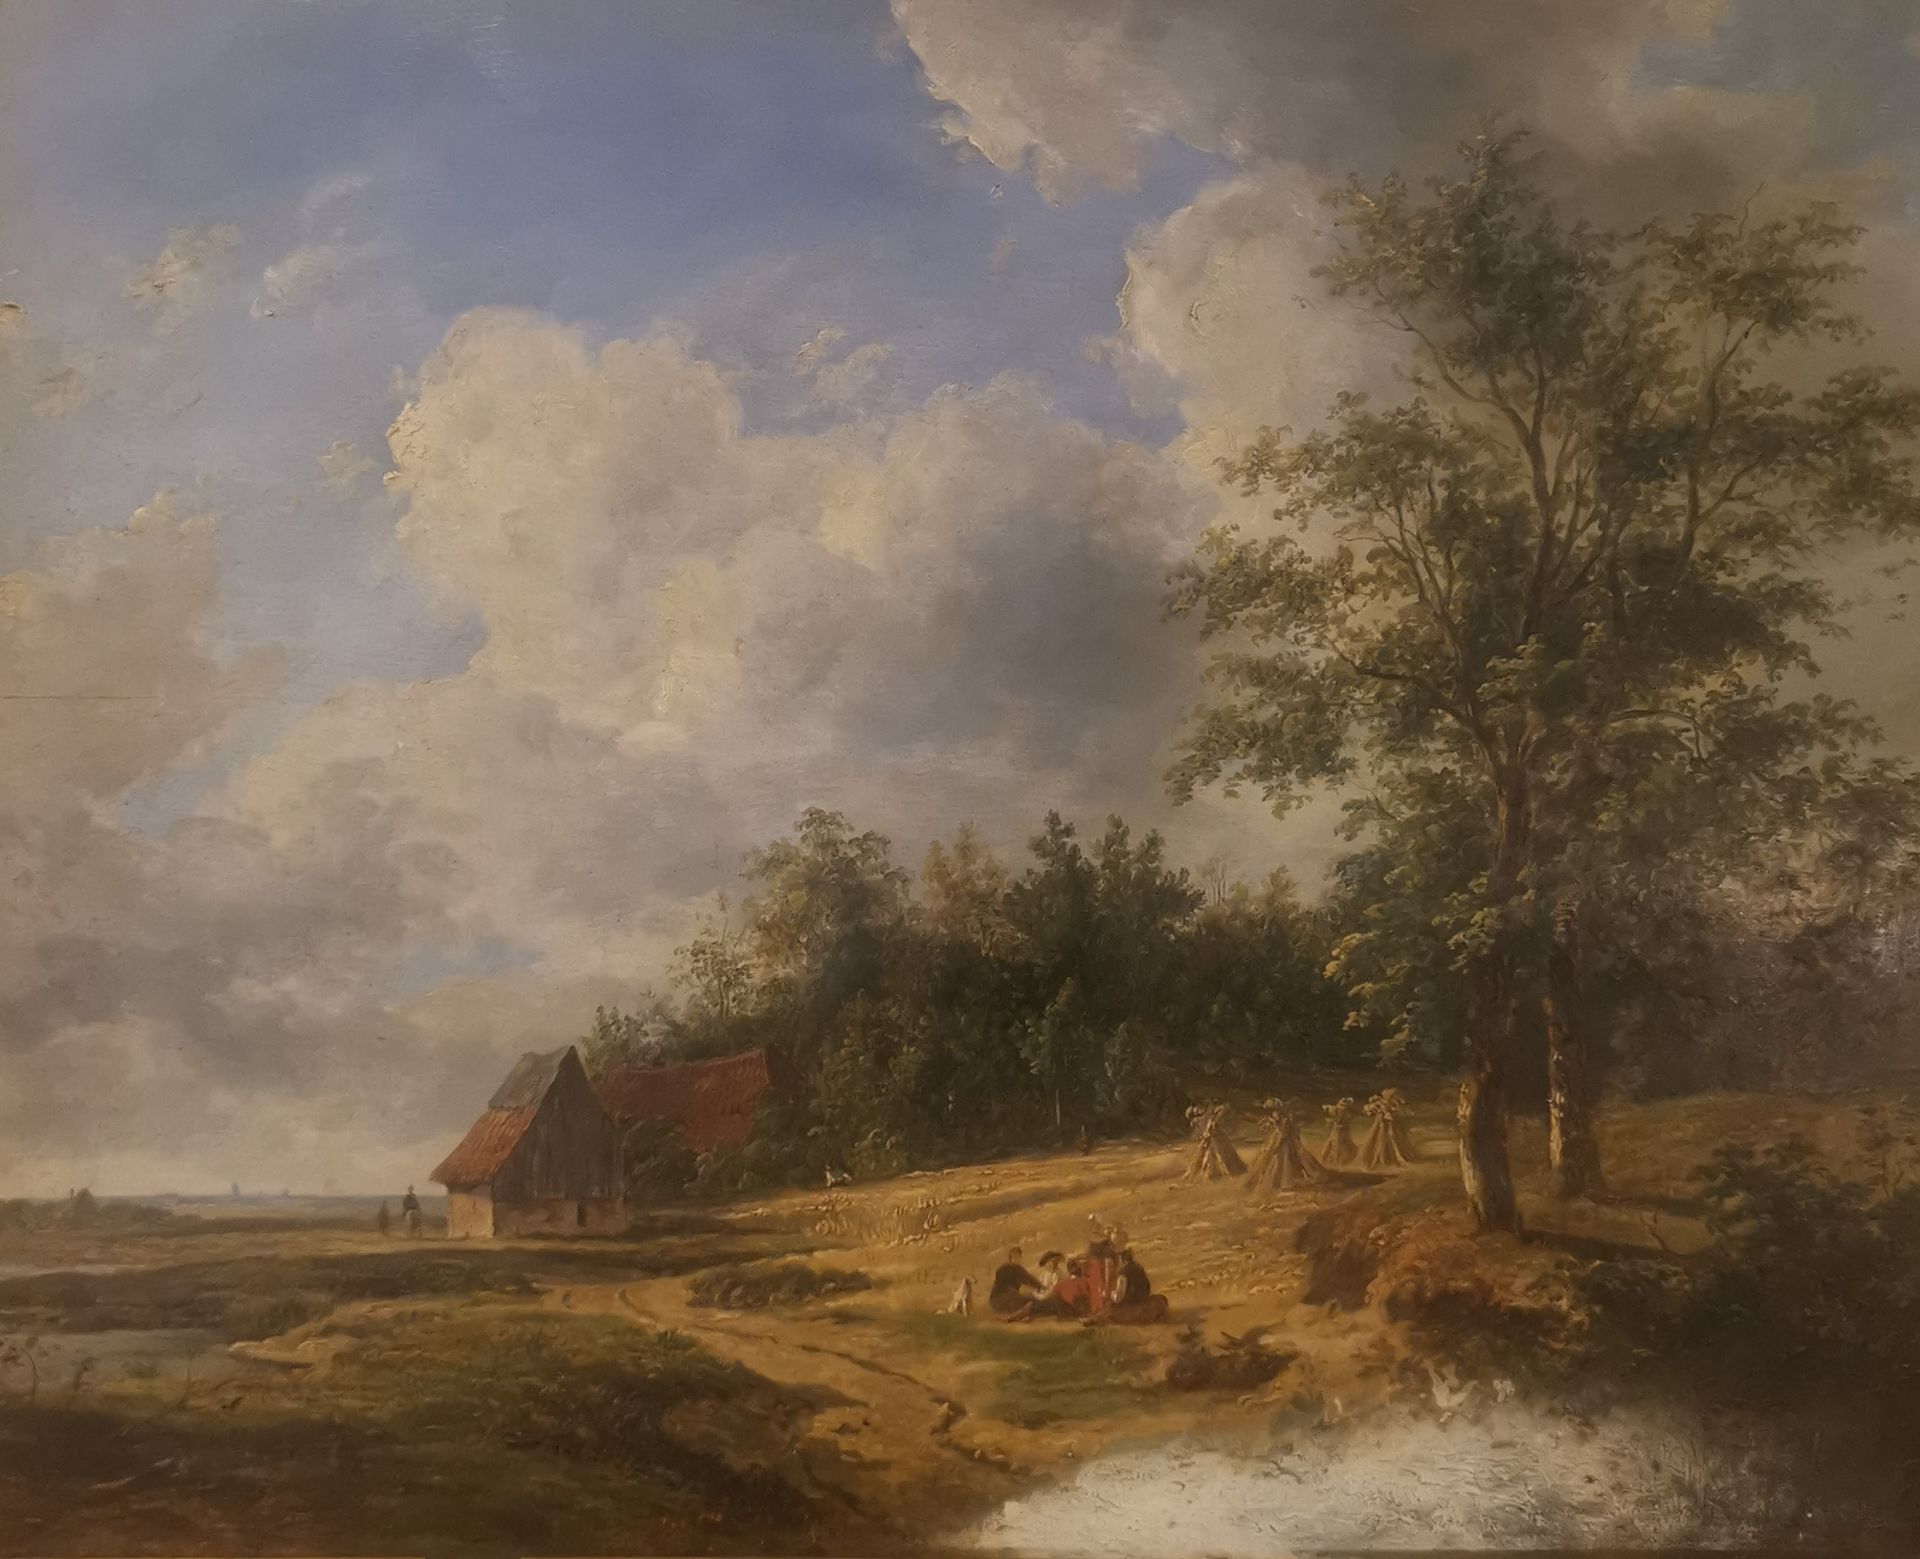 Null 皮埃尔-让-海勒曼斯（1787-1845），归属于。在路边打完干草后暂停一下。橡木板上的油画，右下角签名，部分褪色。Chancis。